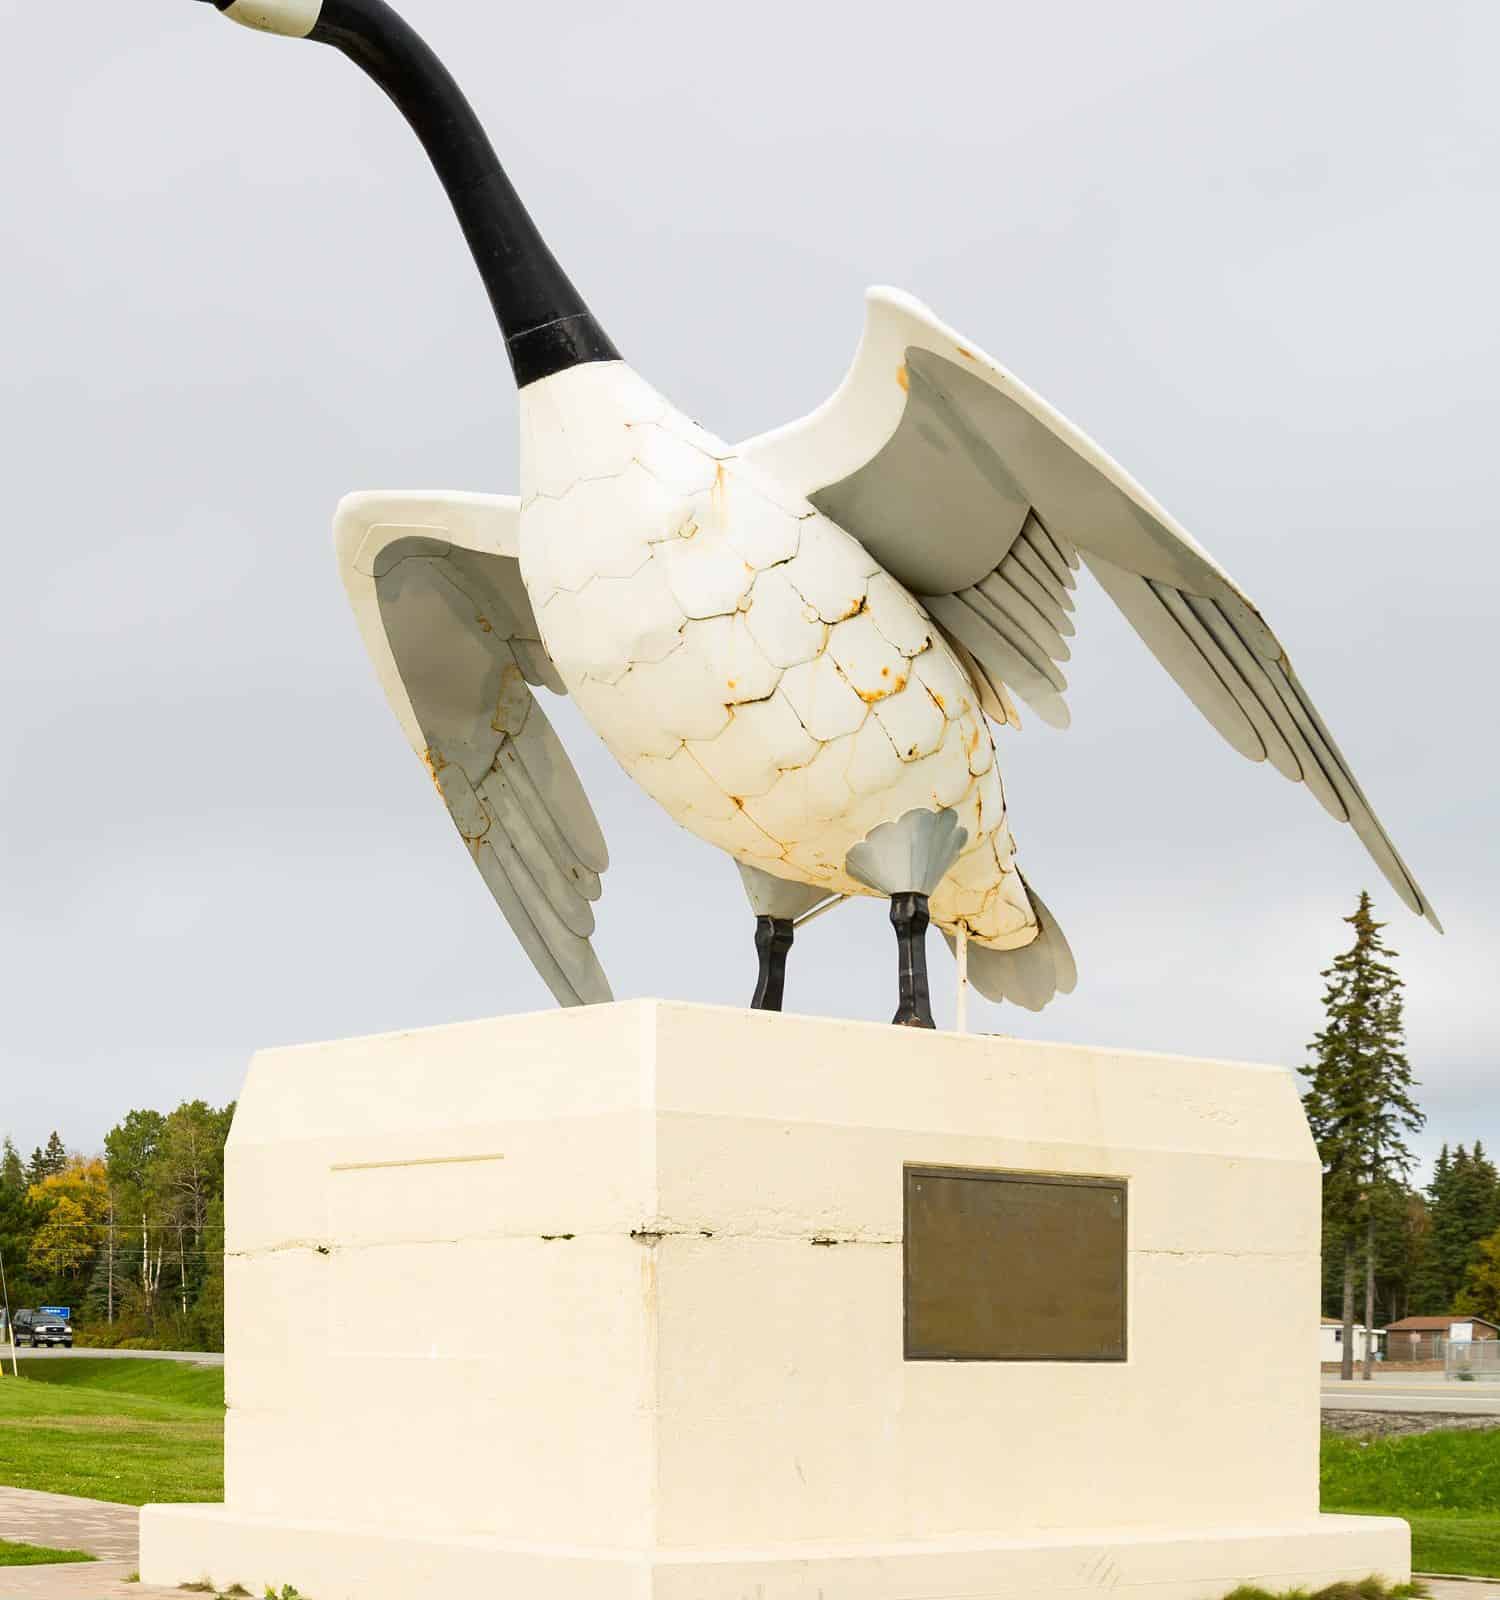 Canada goose statue in Wawa, Ontario